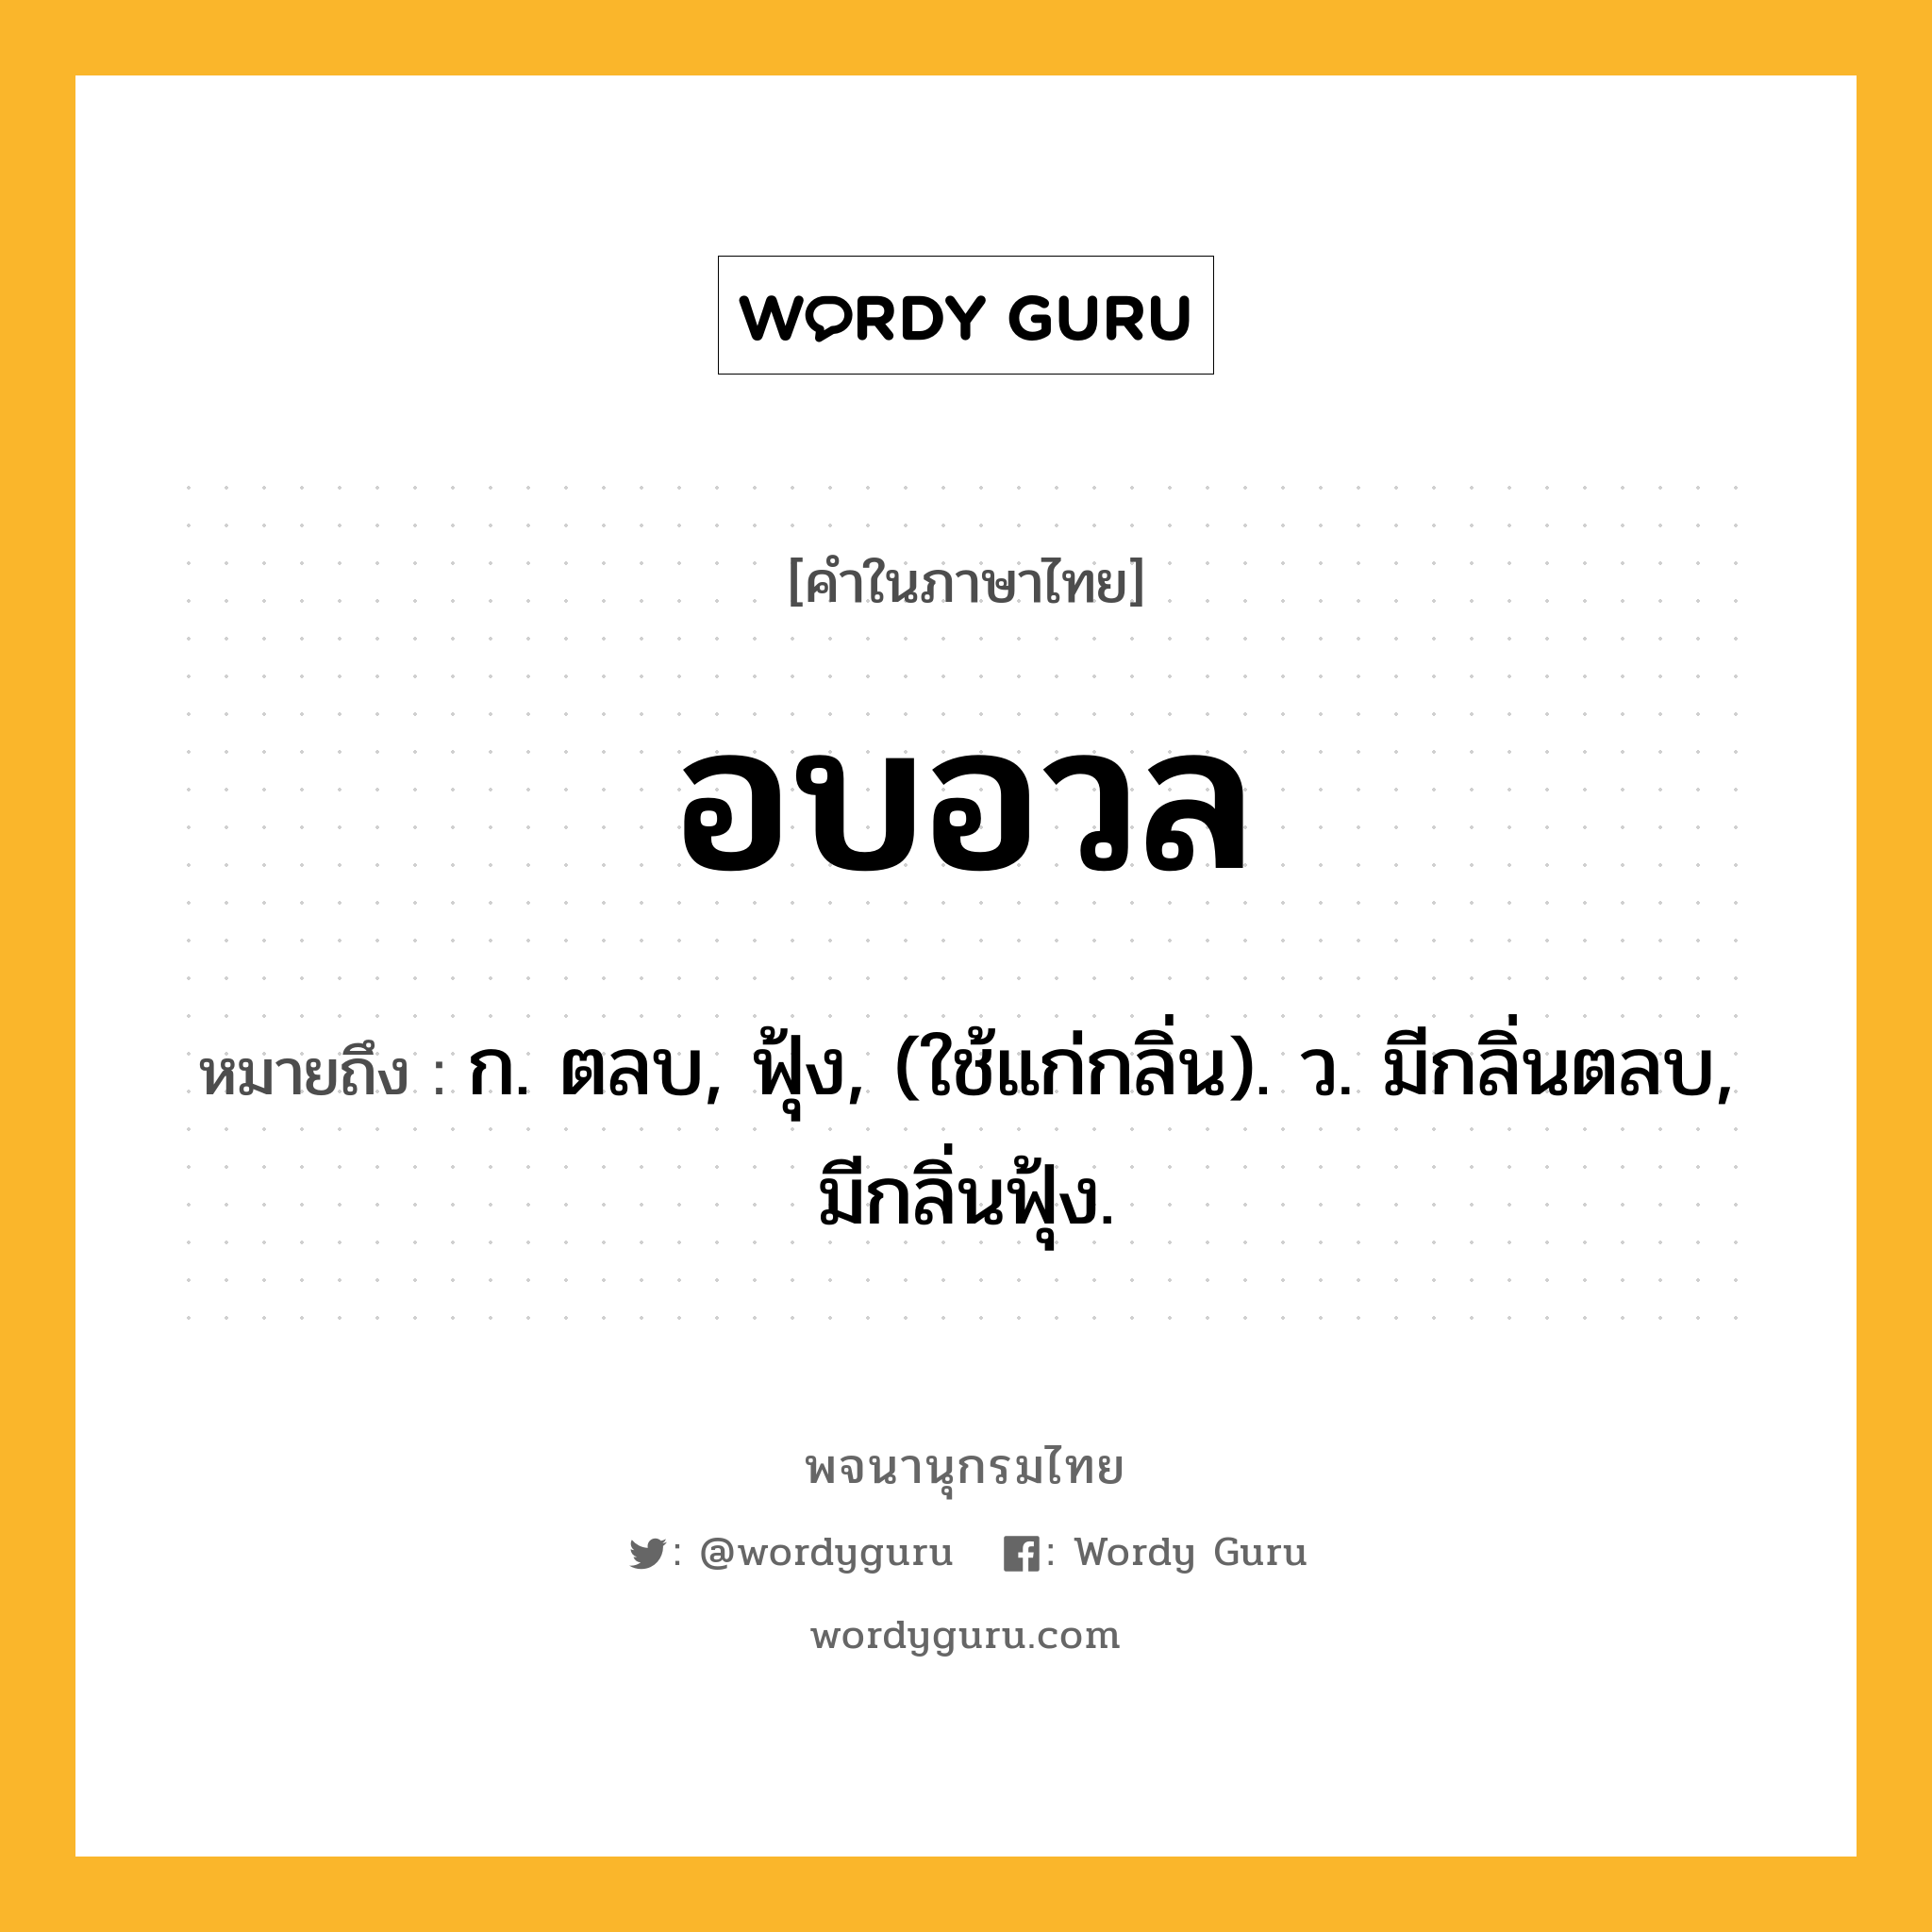 อบอวล ความหมาย หมายถึงอะไร?, คำในภาษาไทย อบอวล หมายถึง ก. ตลบ, ฟุ้ง, (ใช้แก่กลิ่น). ว. มีกลิ่นตลบ, มีกลิ่นฟุ้ง.